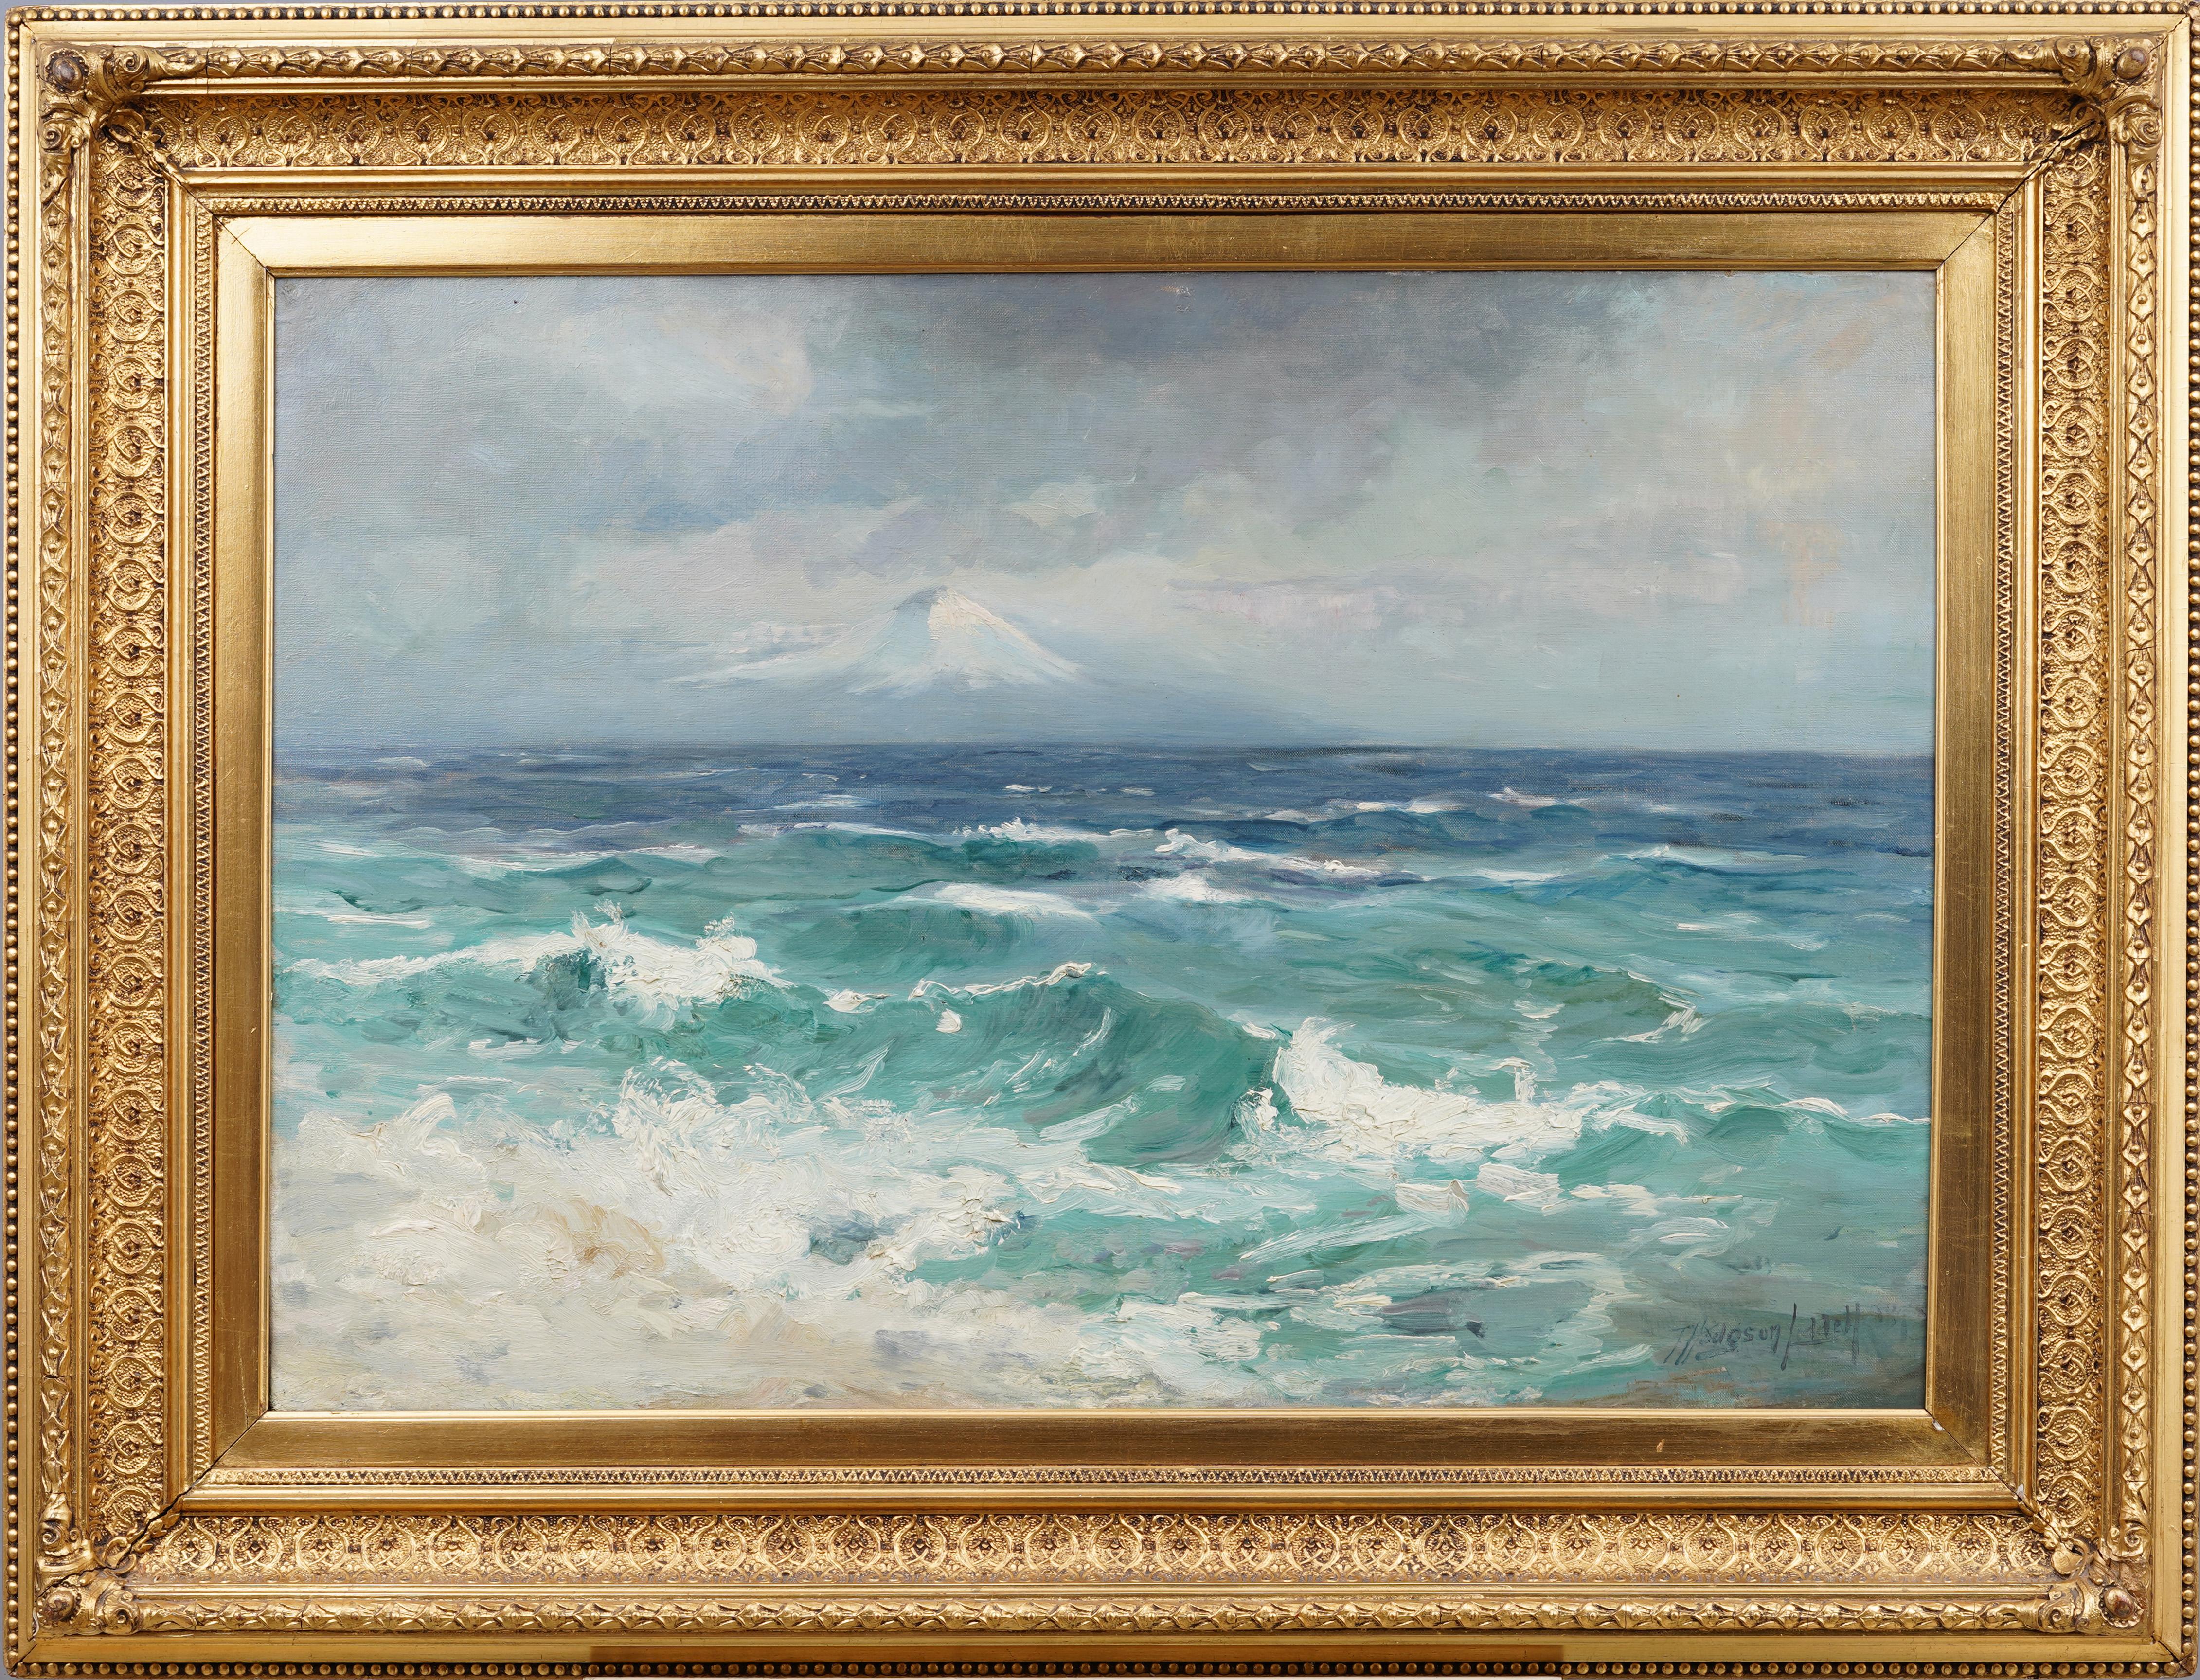 Incroyable peinture du 19e siècle de Thomas Hodgson Liddell (1860 - 1925).  Huile sur toile du Mont Fuji vu de la mer.  Joliment encadré et prêt à être accroché.  Signé en bas à droite.